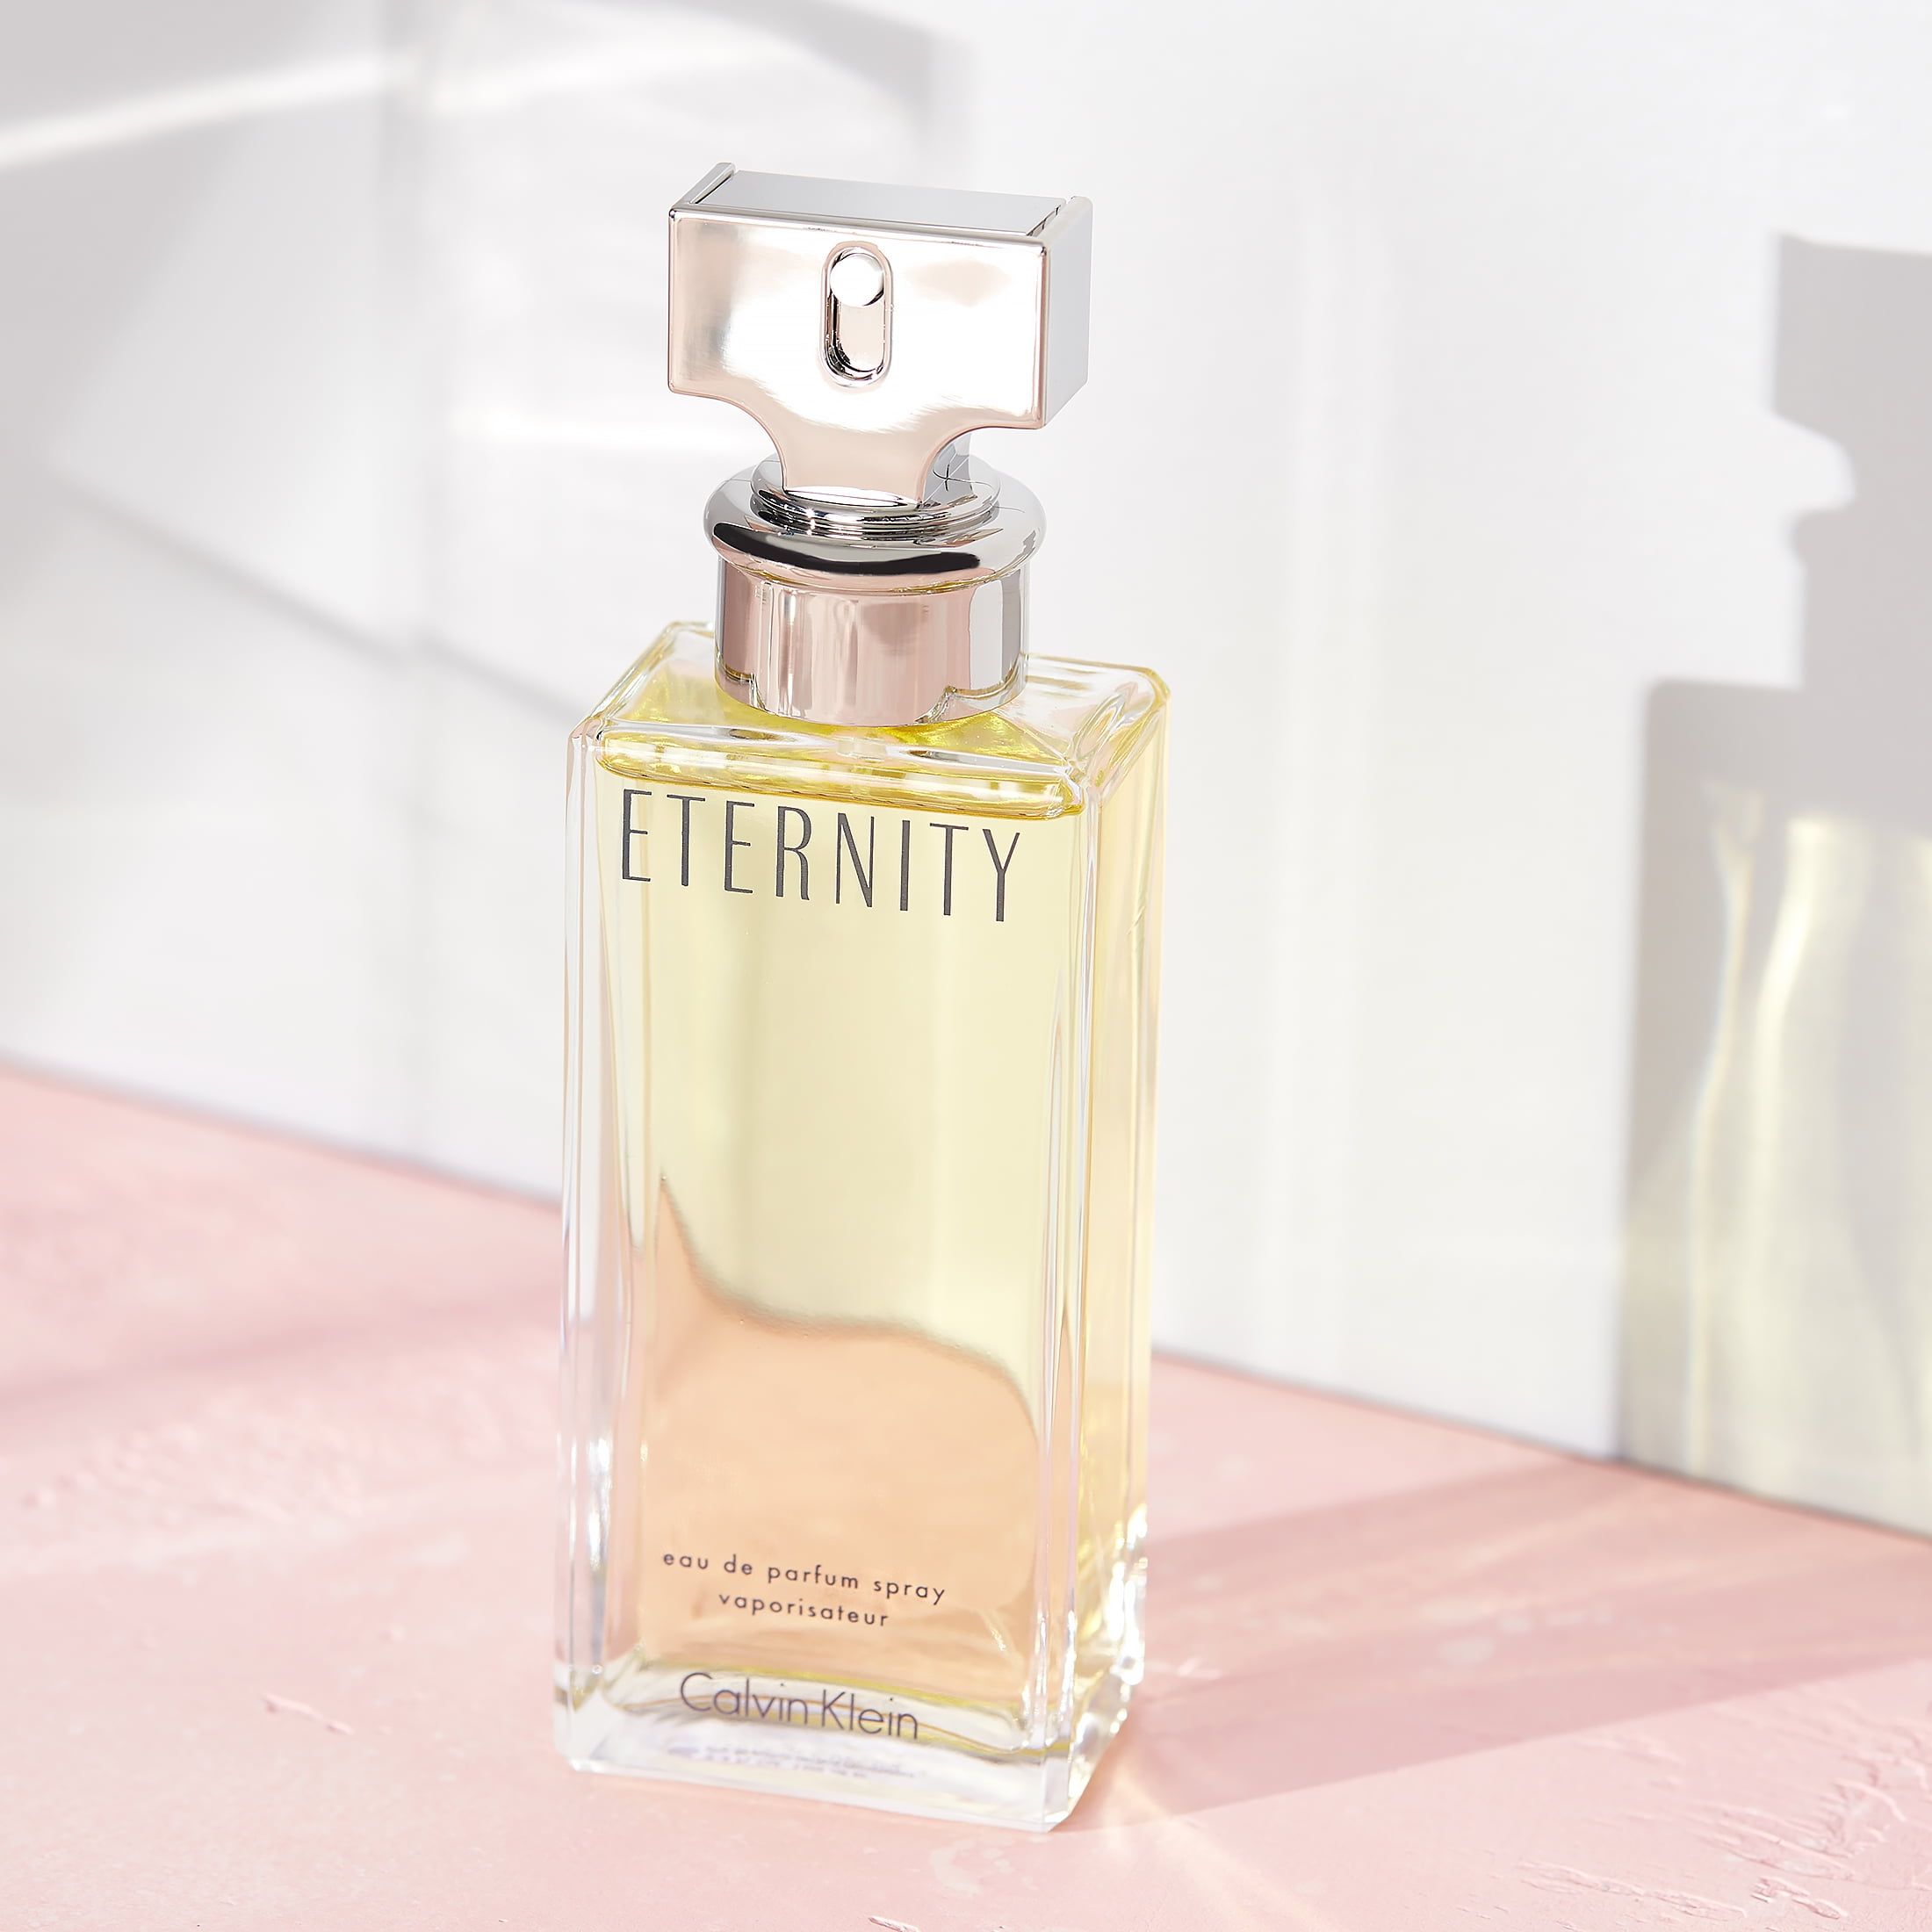 ETERNITY perfume EDP price online Calvin Klein - Perfumes Club